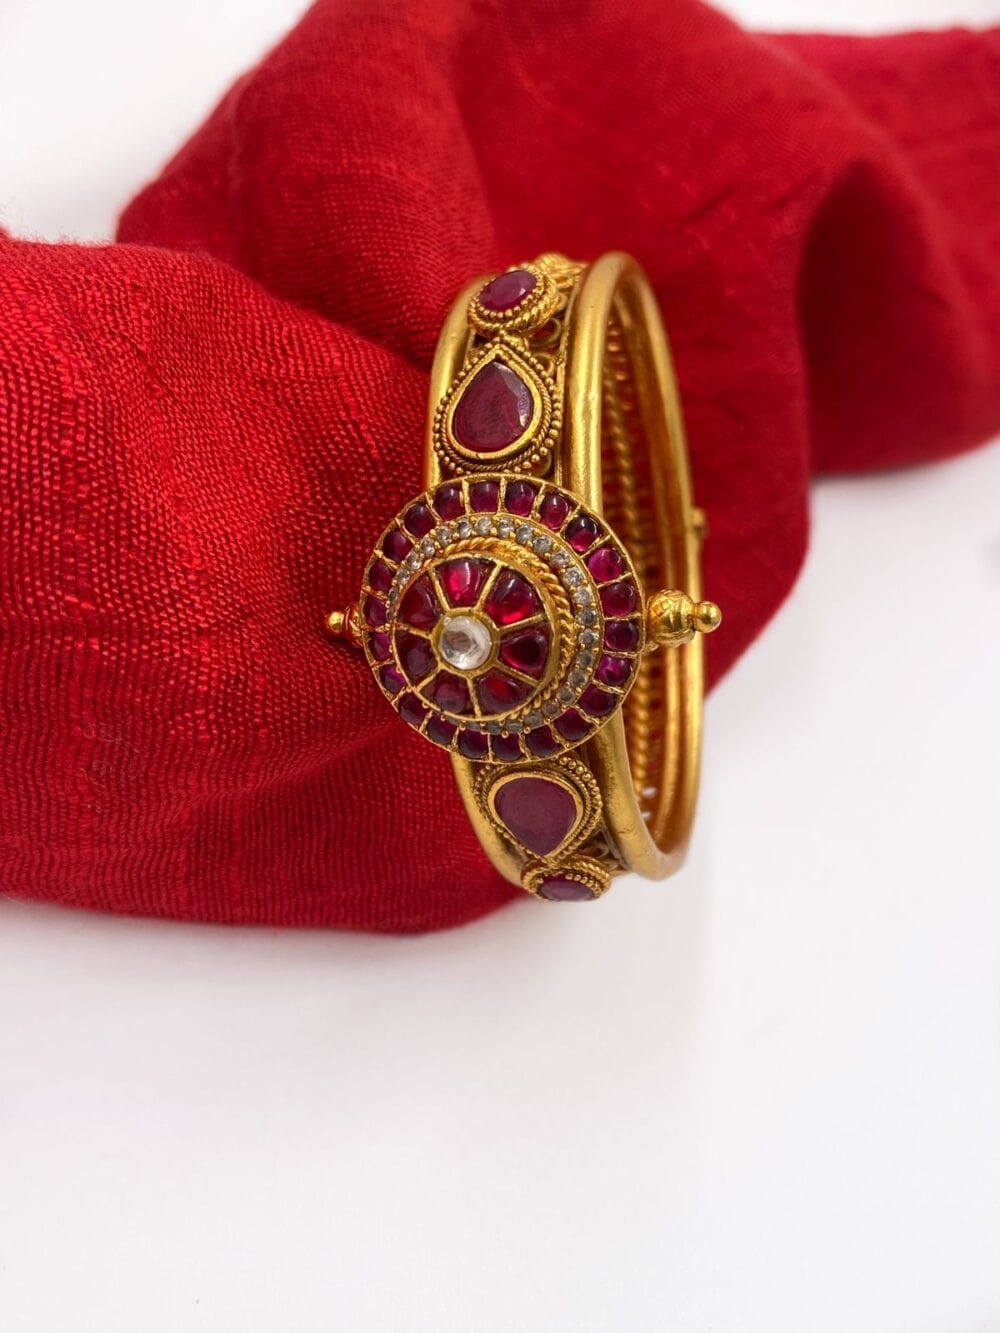 Amazon.com: MileHouse Fashion Bangle Bracelet for Women Girls,Fashion  Flower Chain Rhinestone Wrist Decor Bracelet Bangle - Rose Gold: Clothing,  Shoes & Jewelry